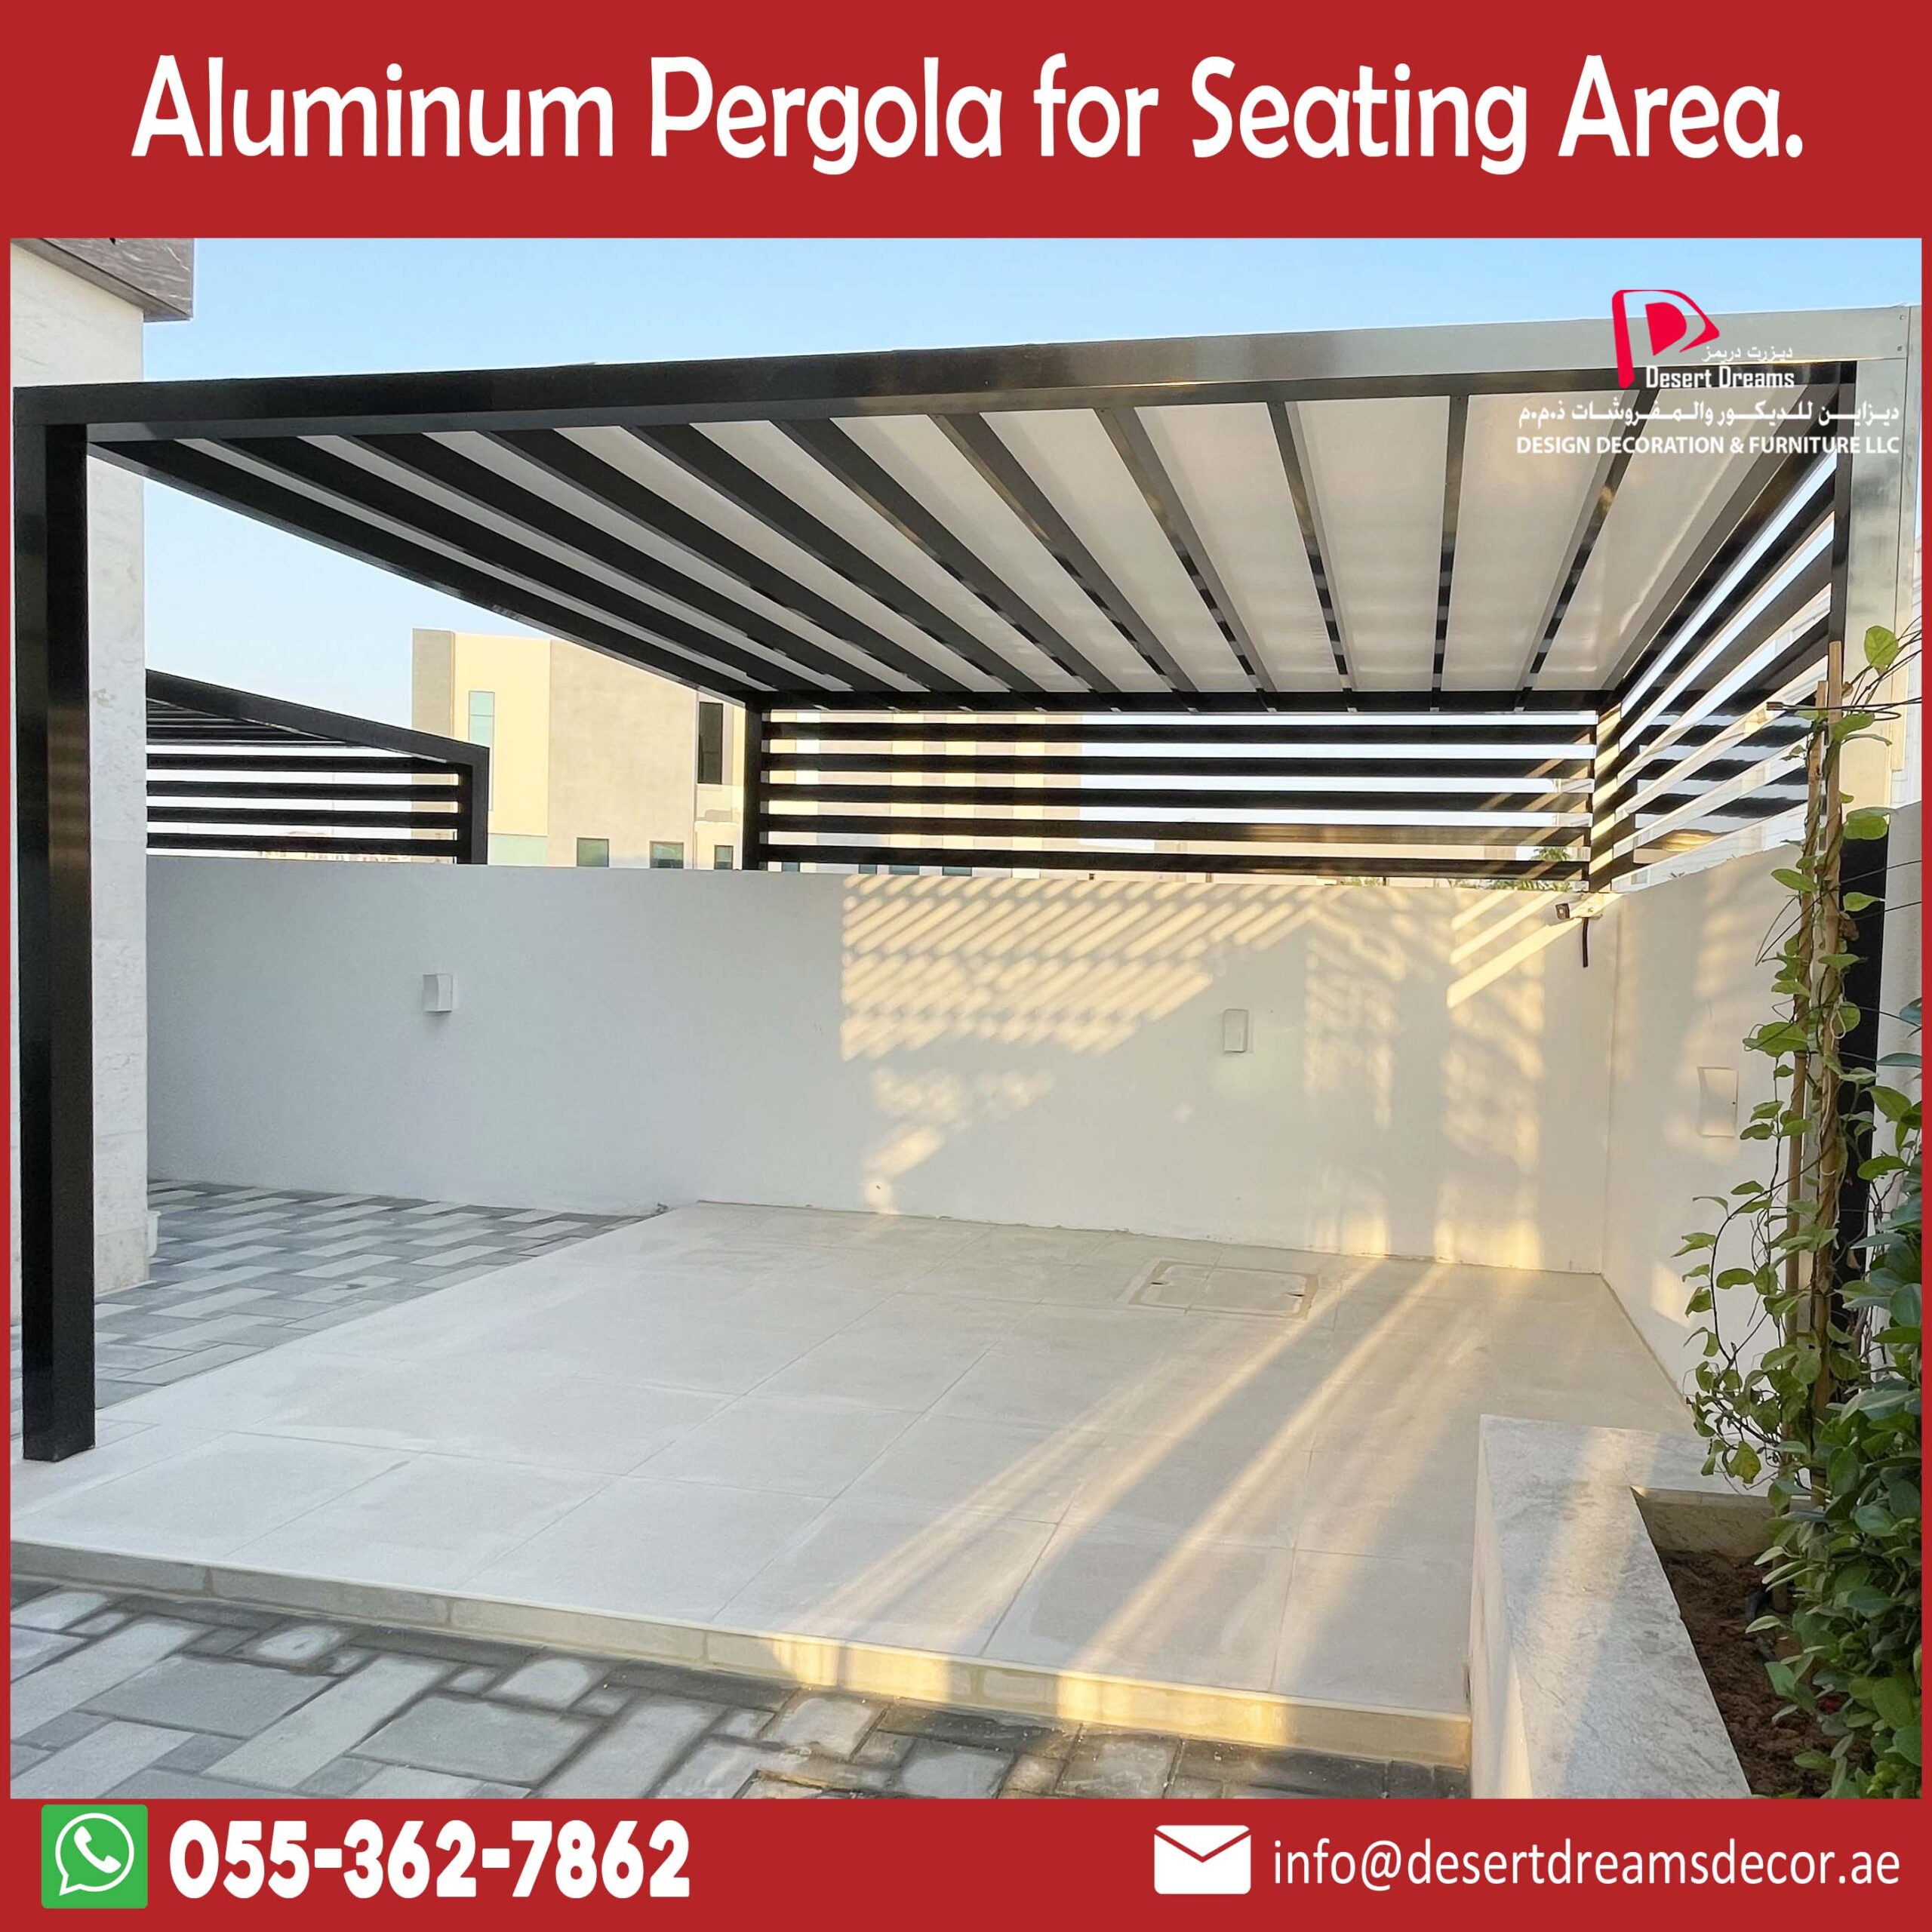 Aluminum Pergola for Seating Area in UAE.jpg